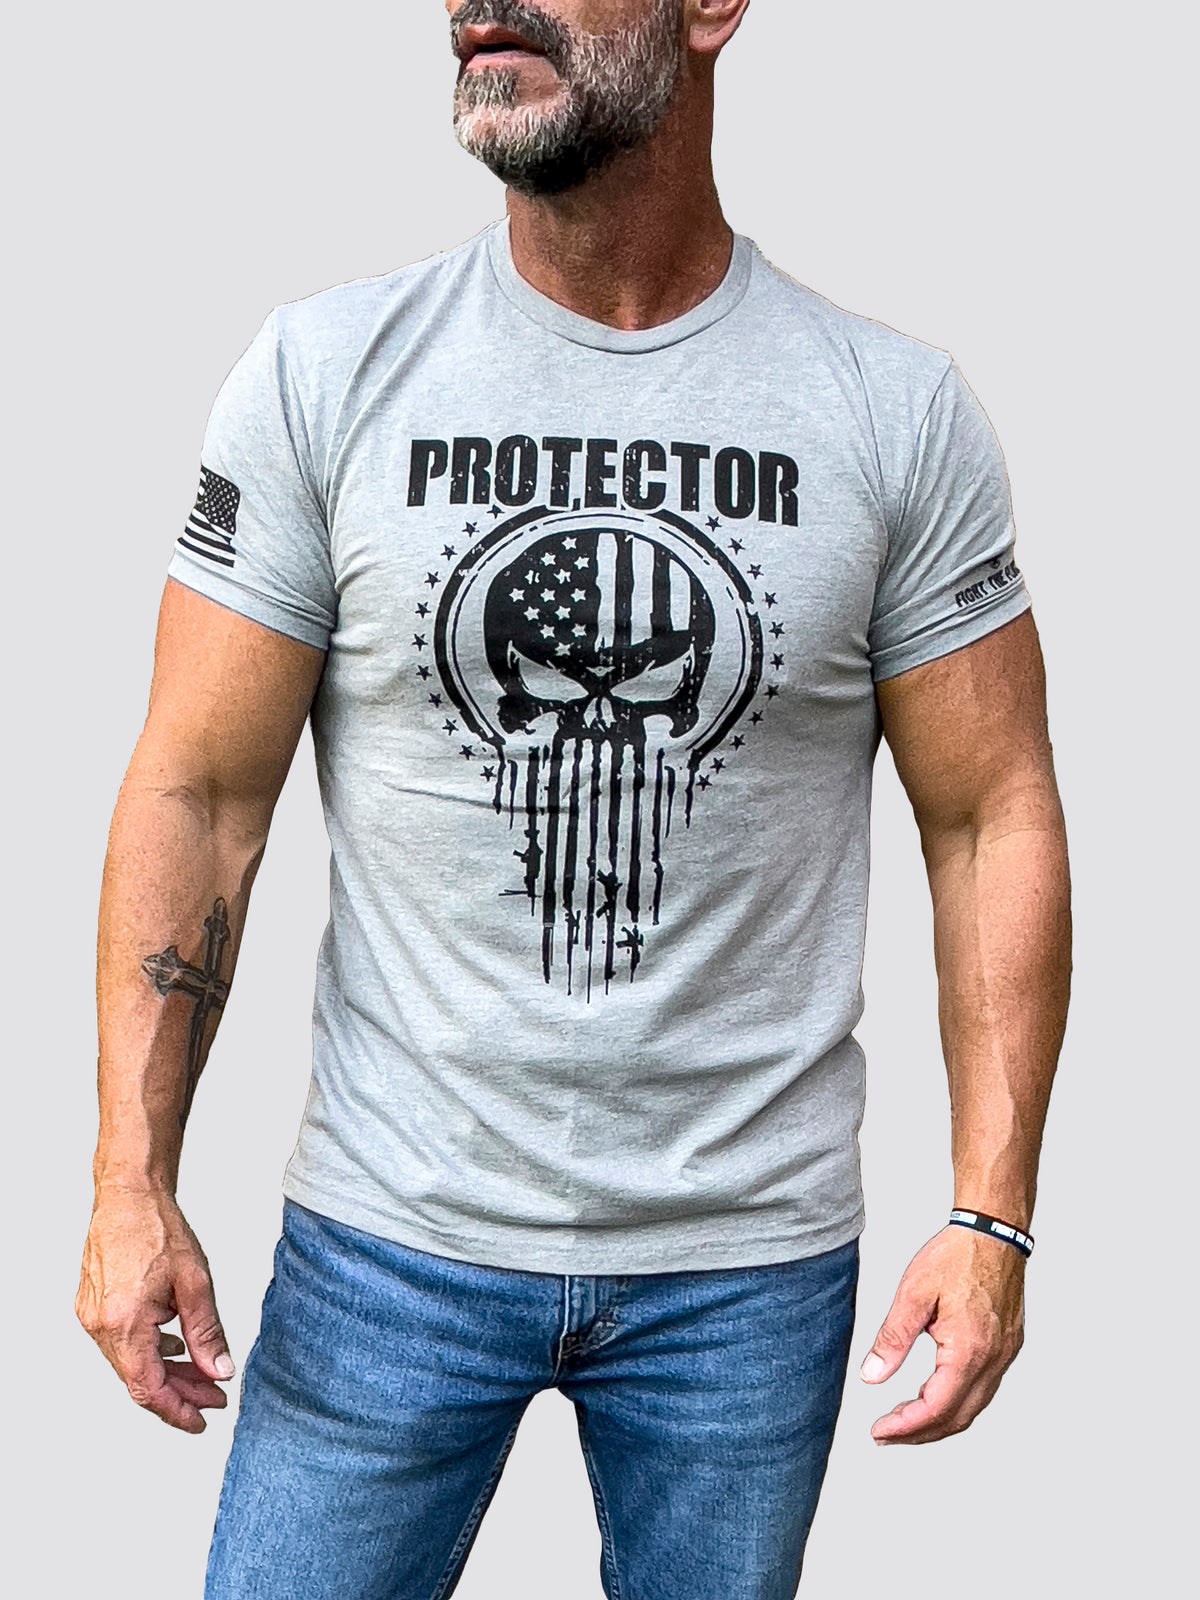 PROTECTOR Mens Crewneck T-Shirt